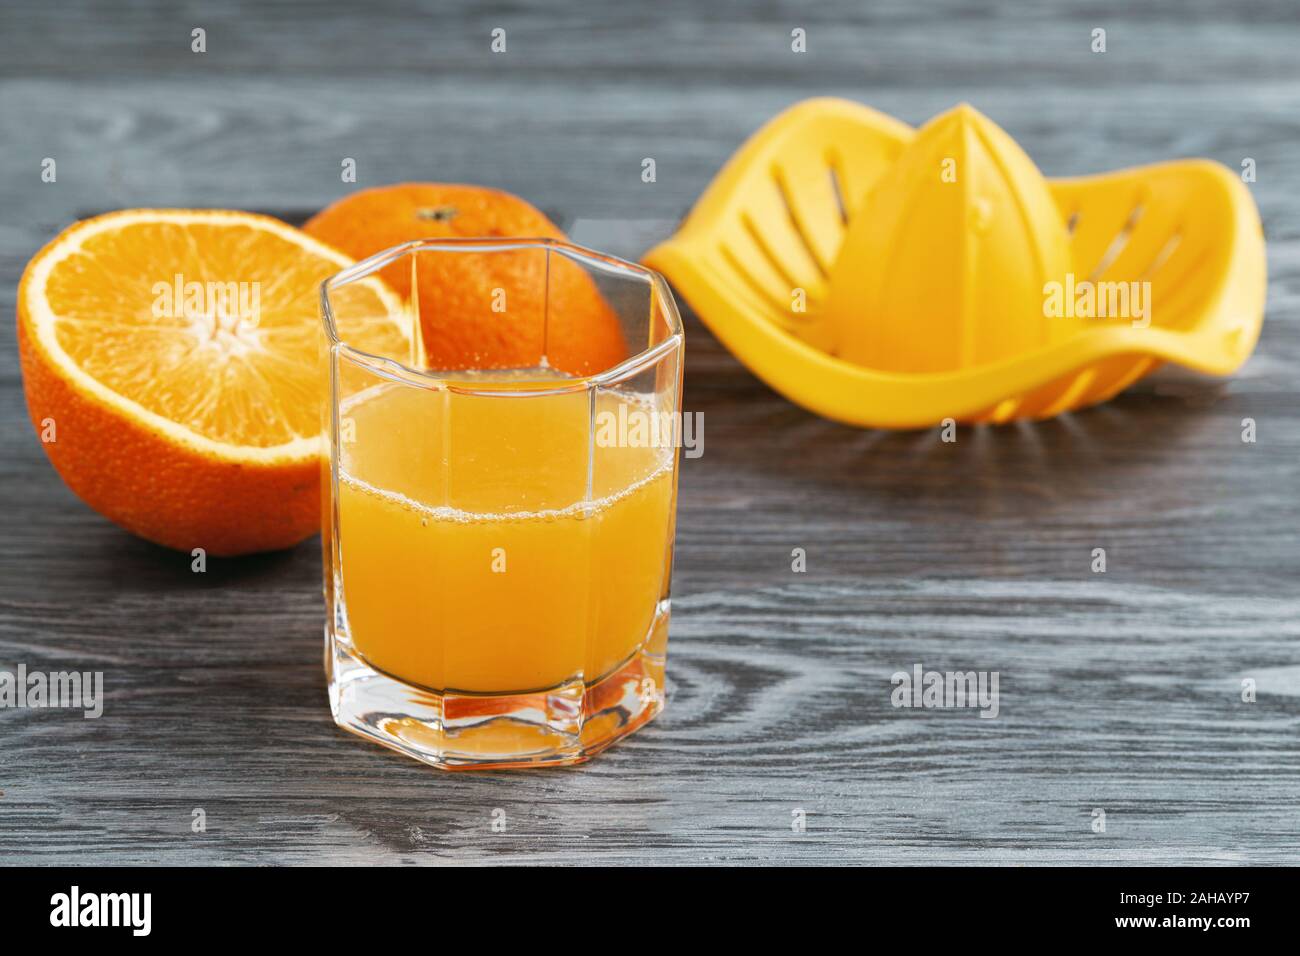 Preparazione di succo d'arancia appena spremuto su una centrifuga manuale per agrumi. Foto Stock